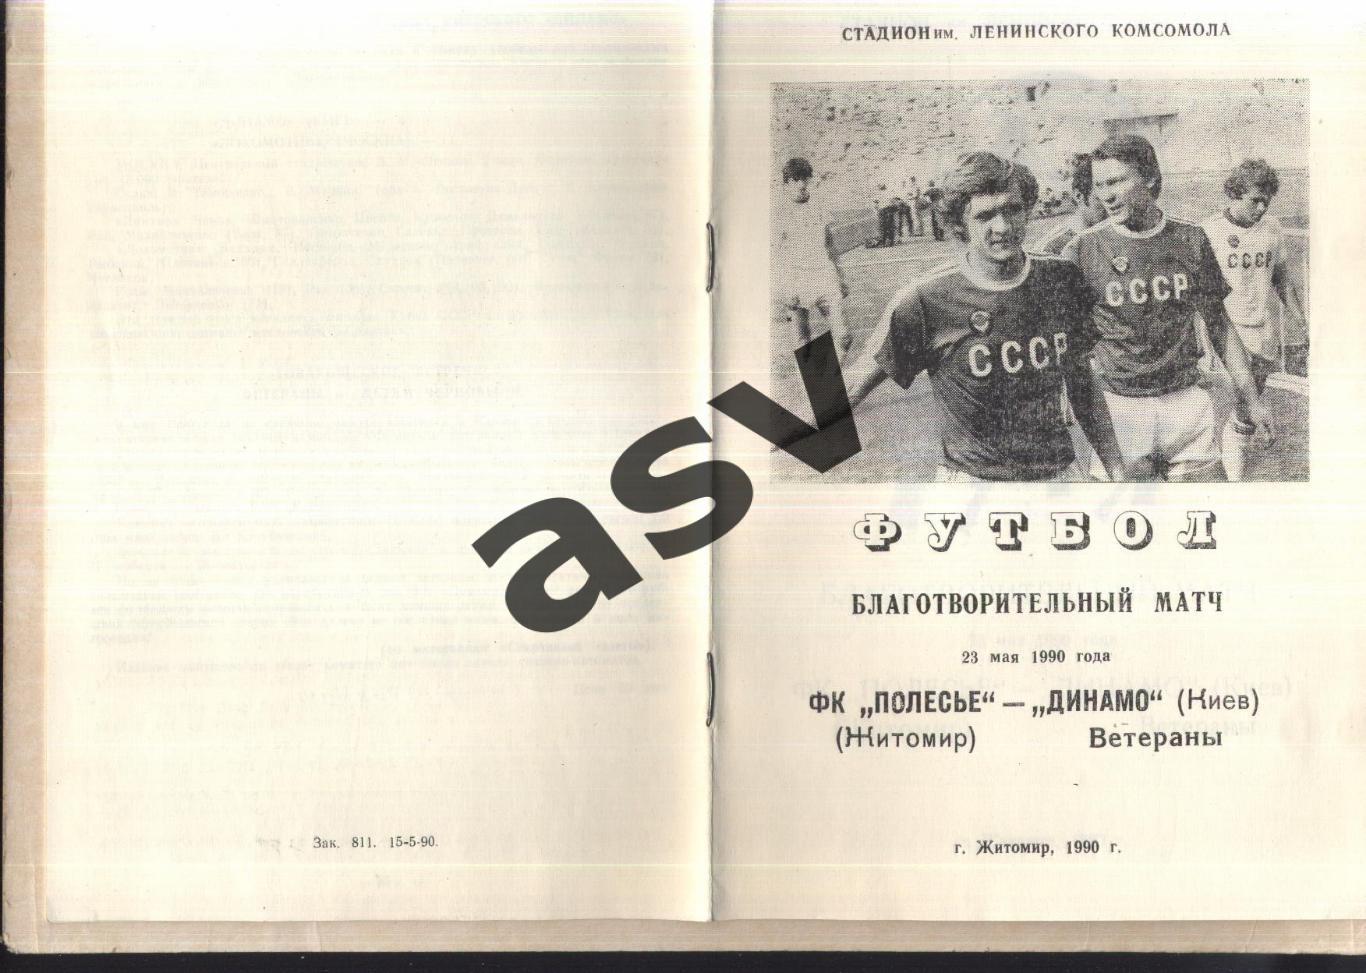 Полесье Житомир - Динамо Киев — 23.05.1990 Ветераны